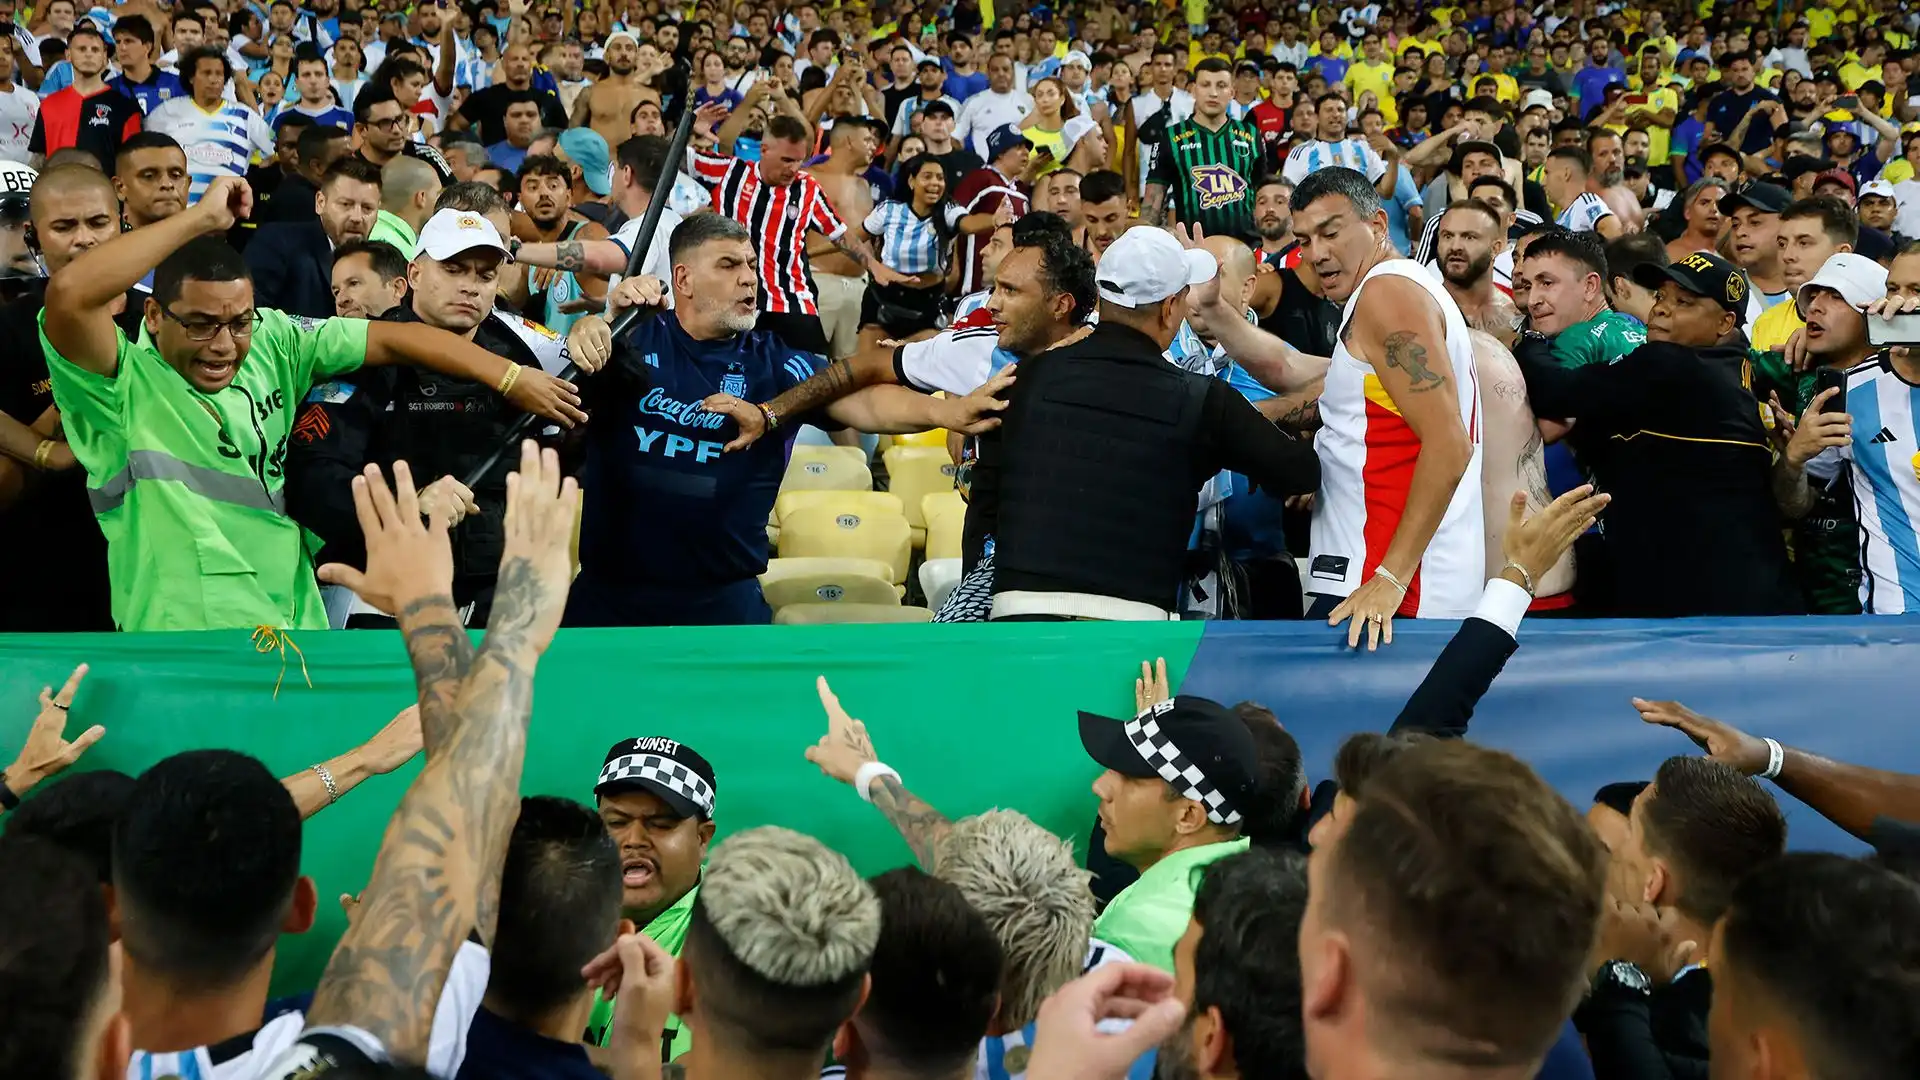 Allo stadio erano presenti circa 3'000 tifosi argentini